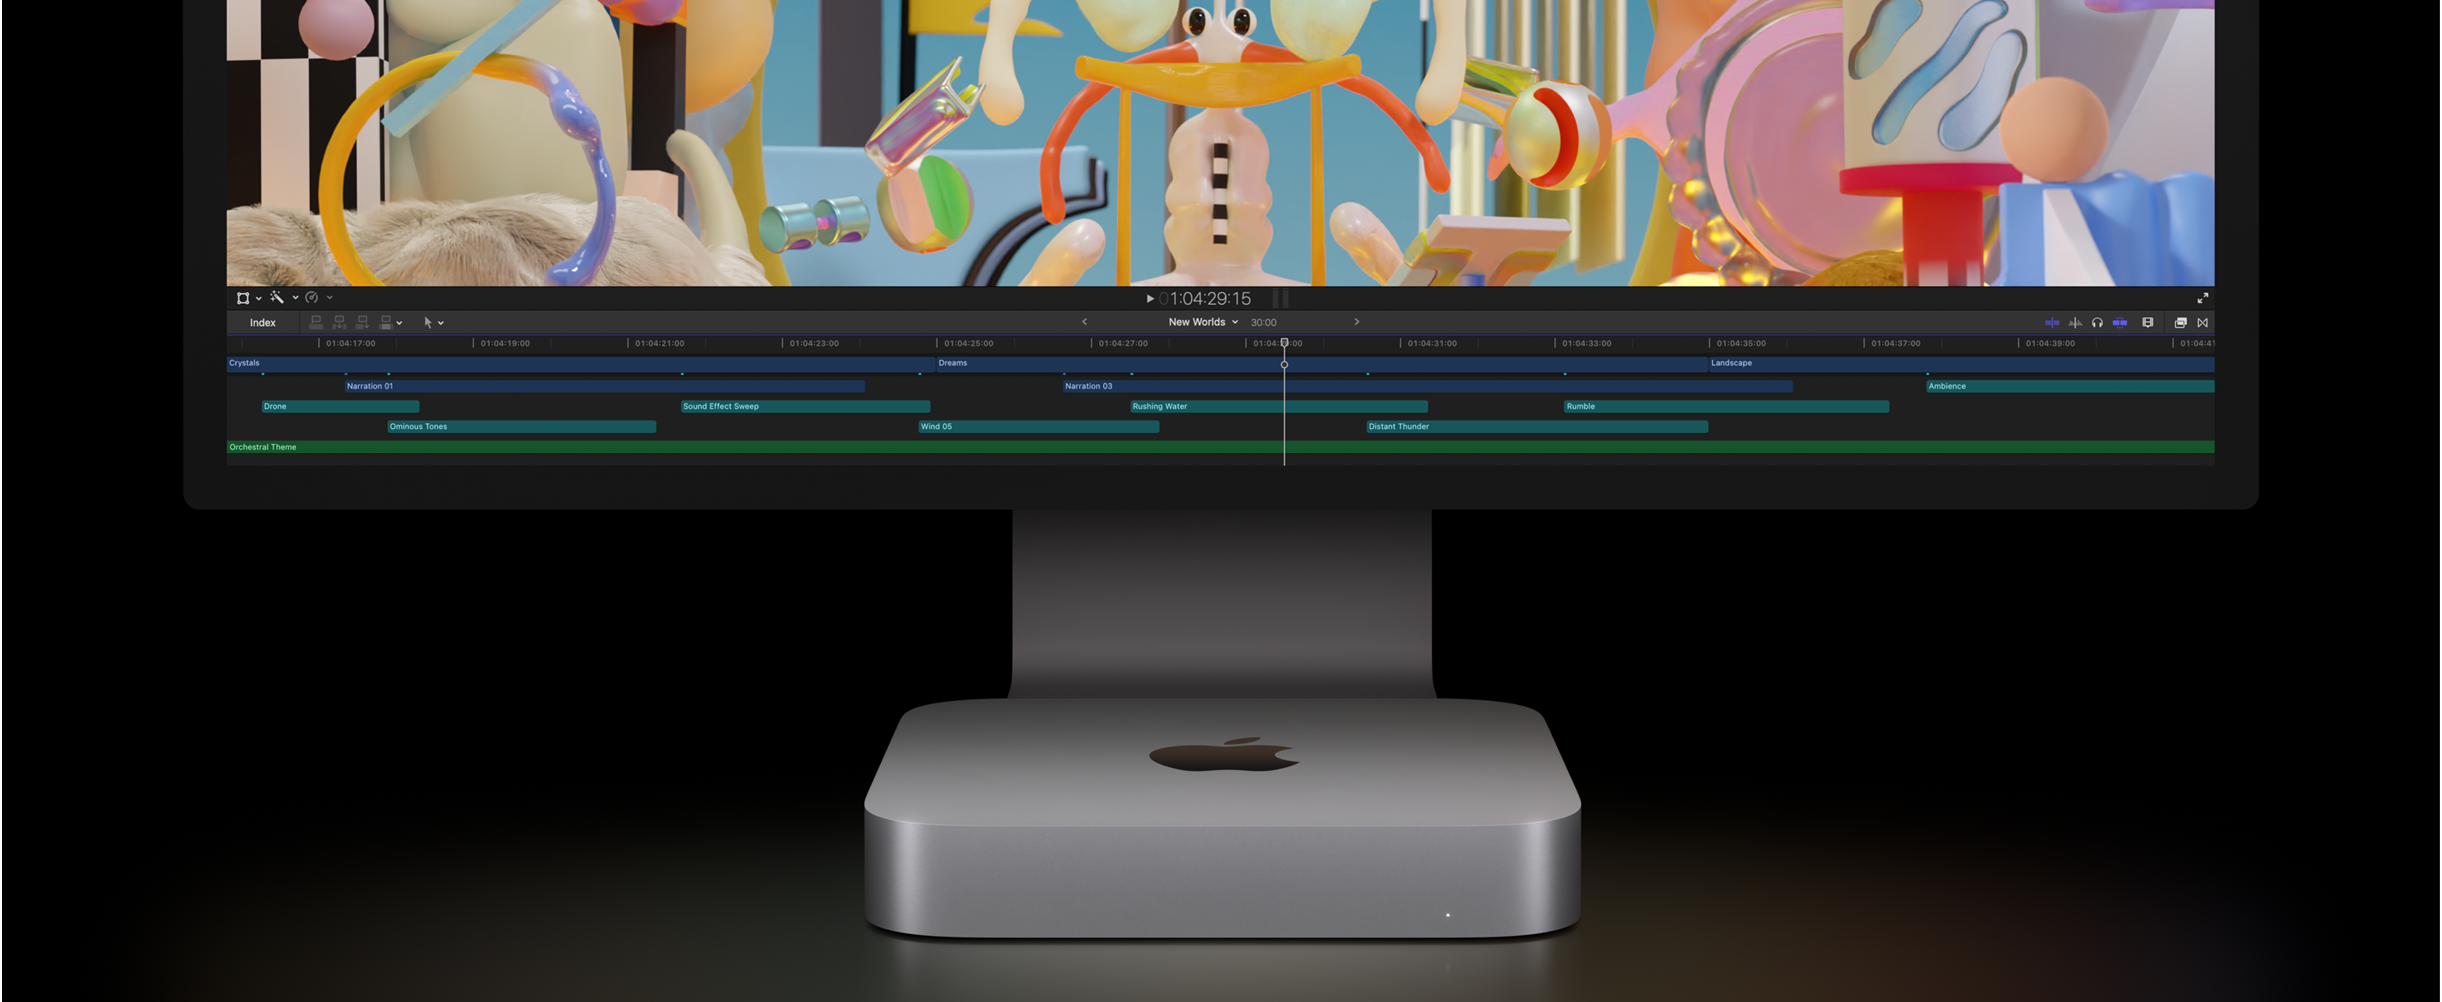 Μπροστινή όψη του Mac mini και του Studio Display που εμφανίζει ένα έργο επεξεργασίας βίντεο στο Final Cut Pro.